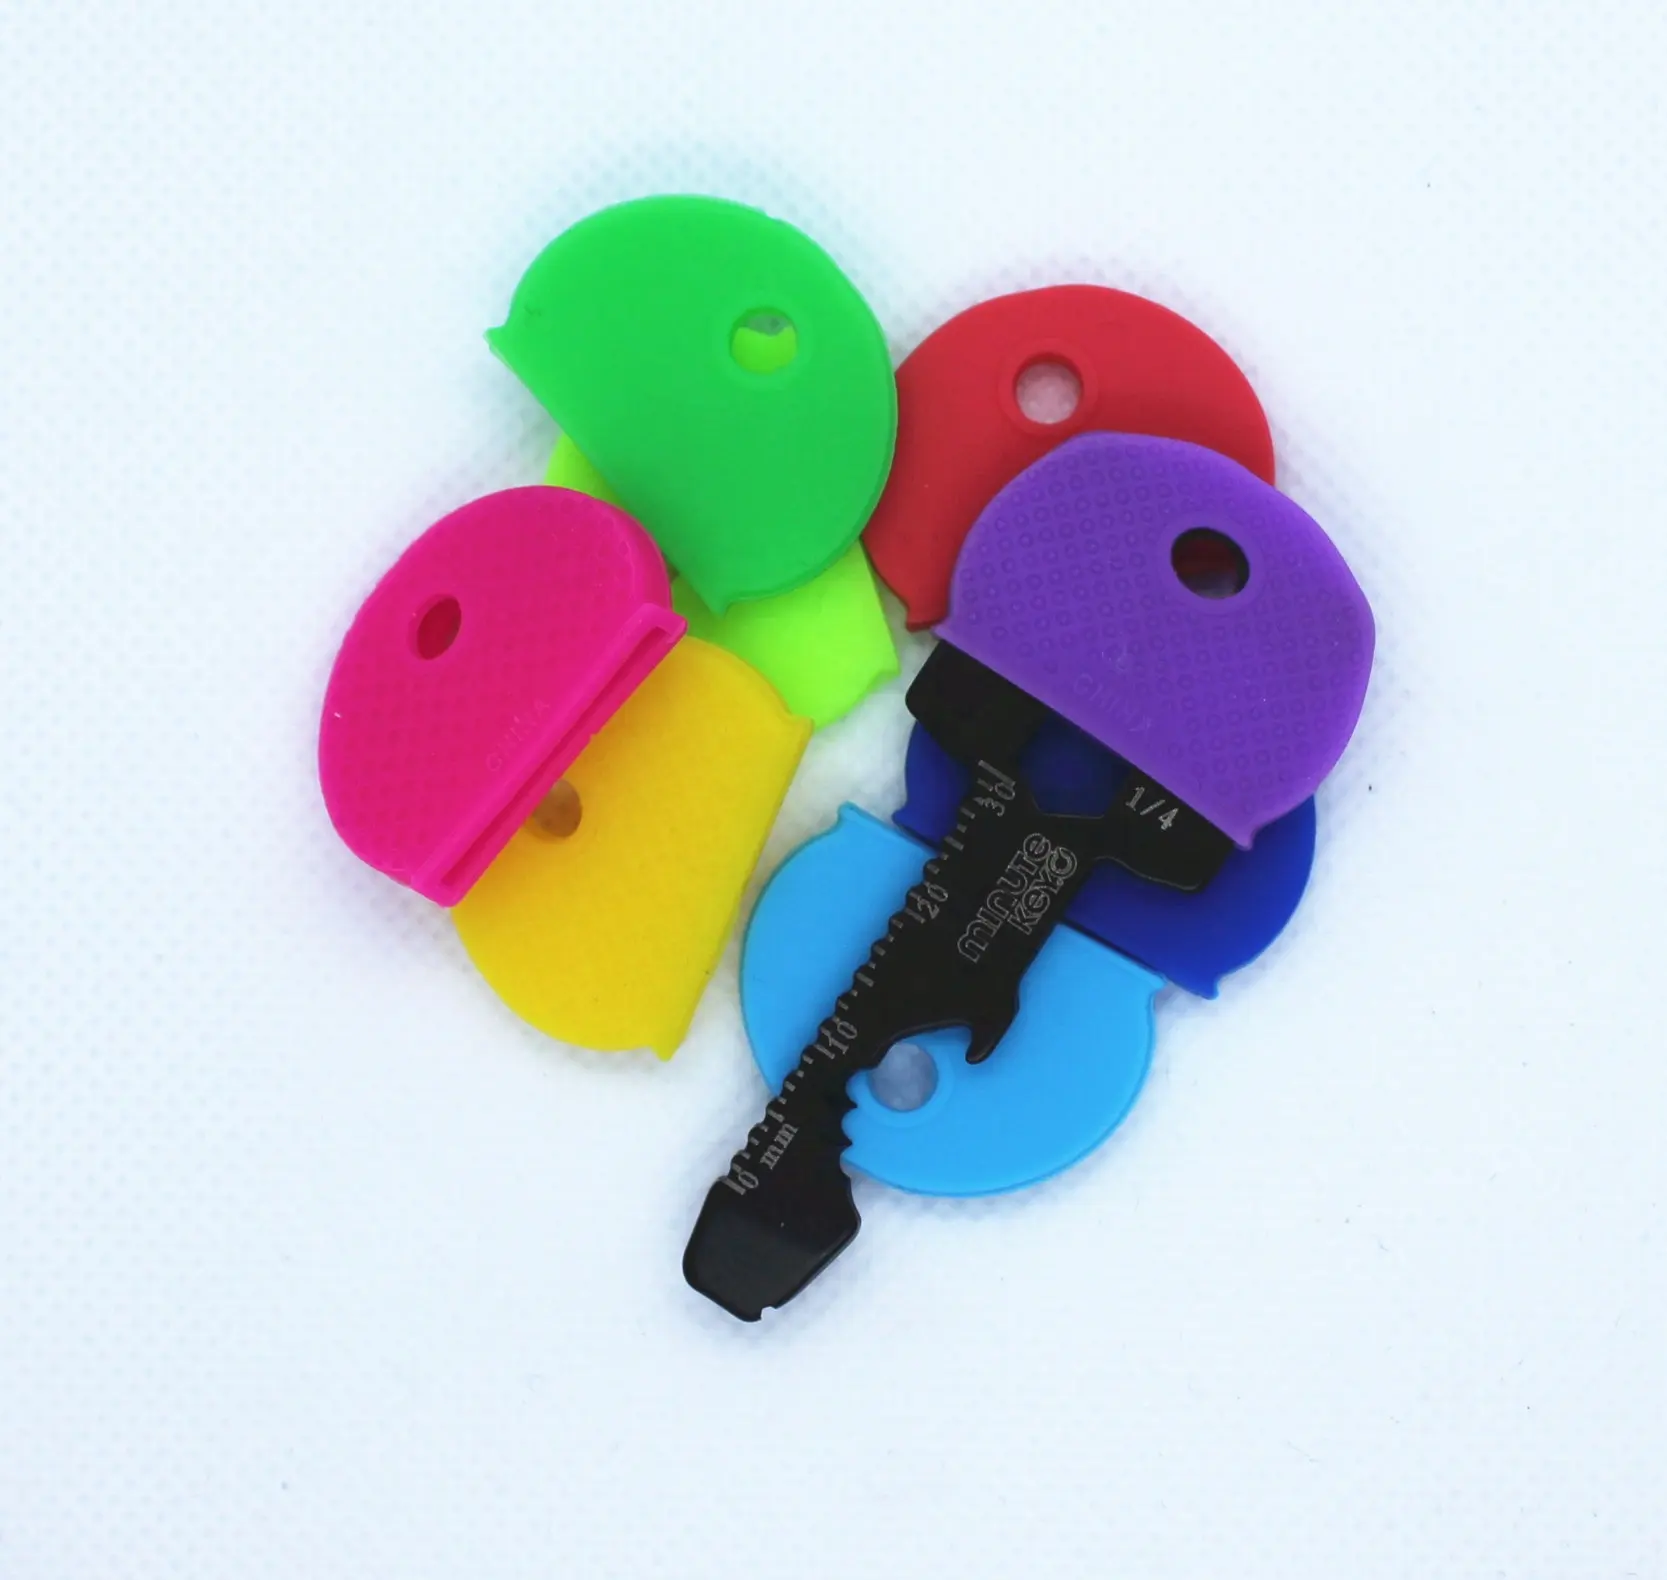 Capas chaves conjunto de etiquetas identificador chave plástico anéis em cores variadas